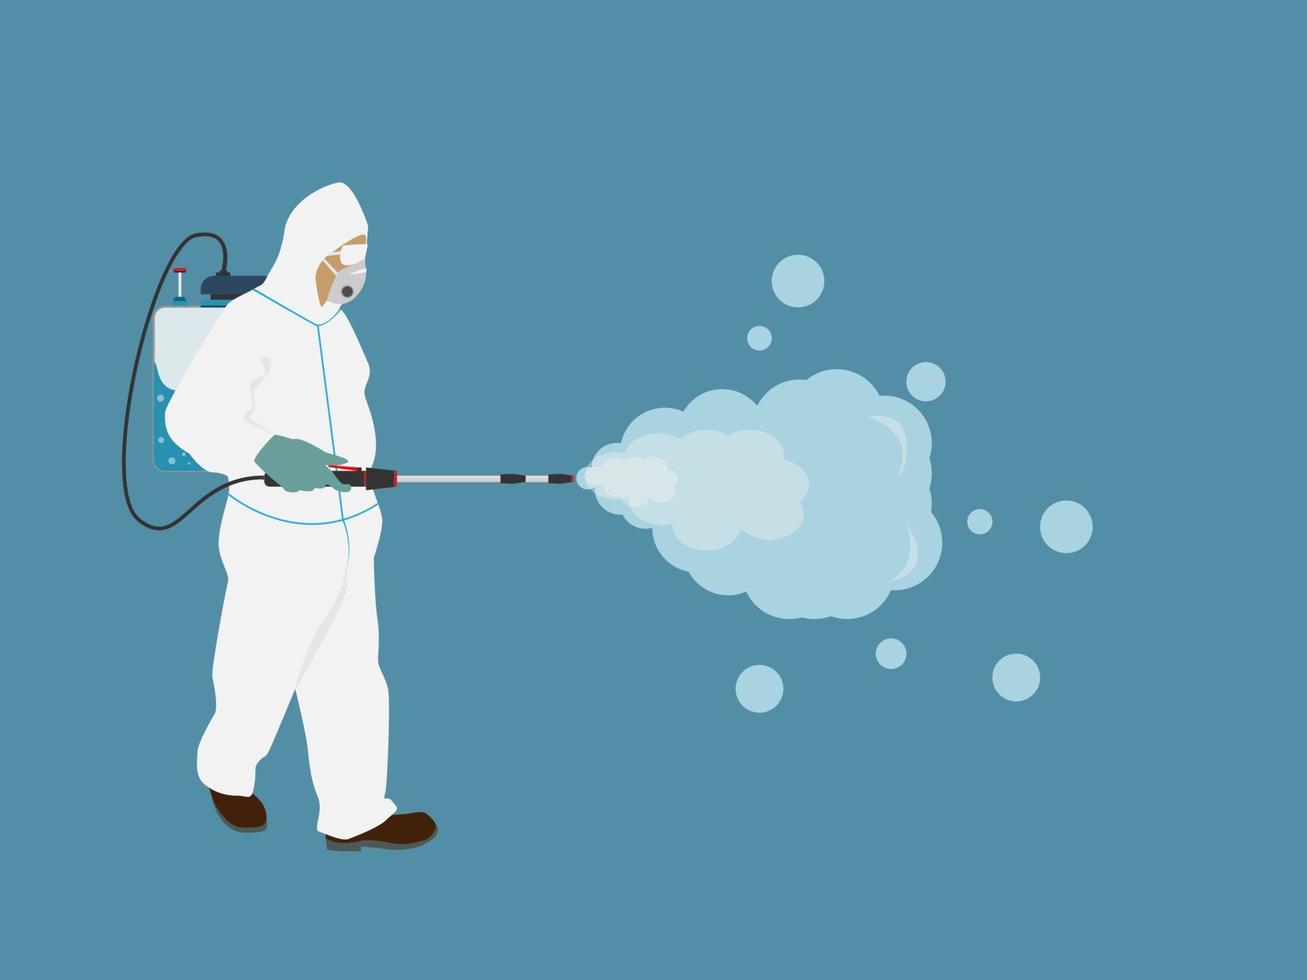 um jovem usa roupas de proteção, uma máscara de gás e uma botija de gás para matar o vírus corona. toxina e proteção química vetor